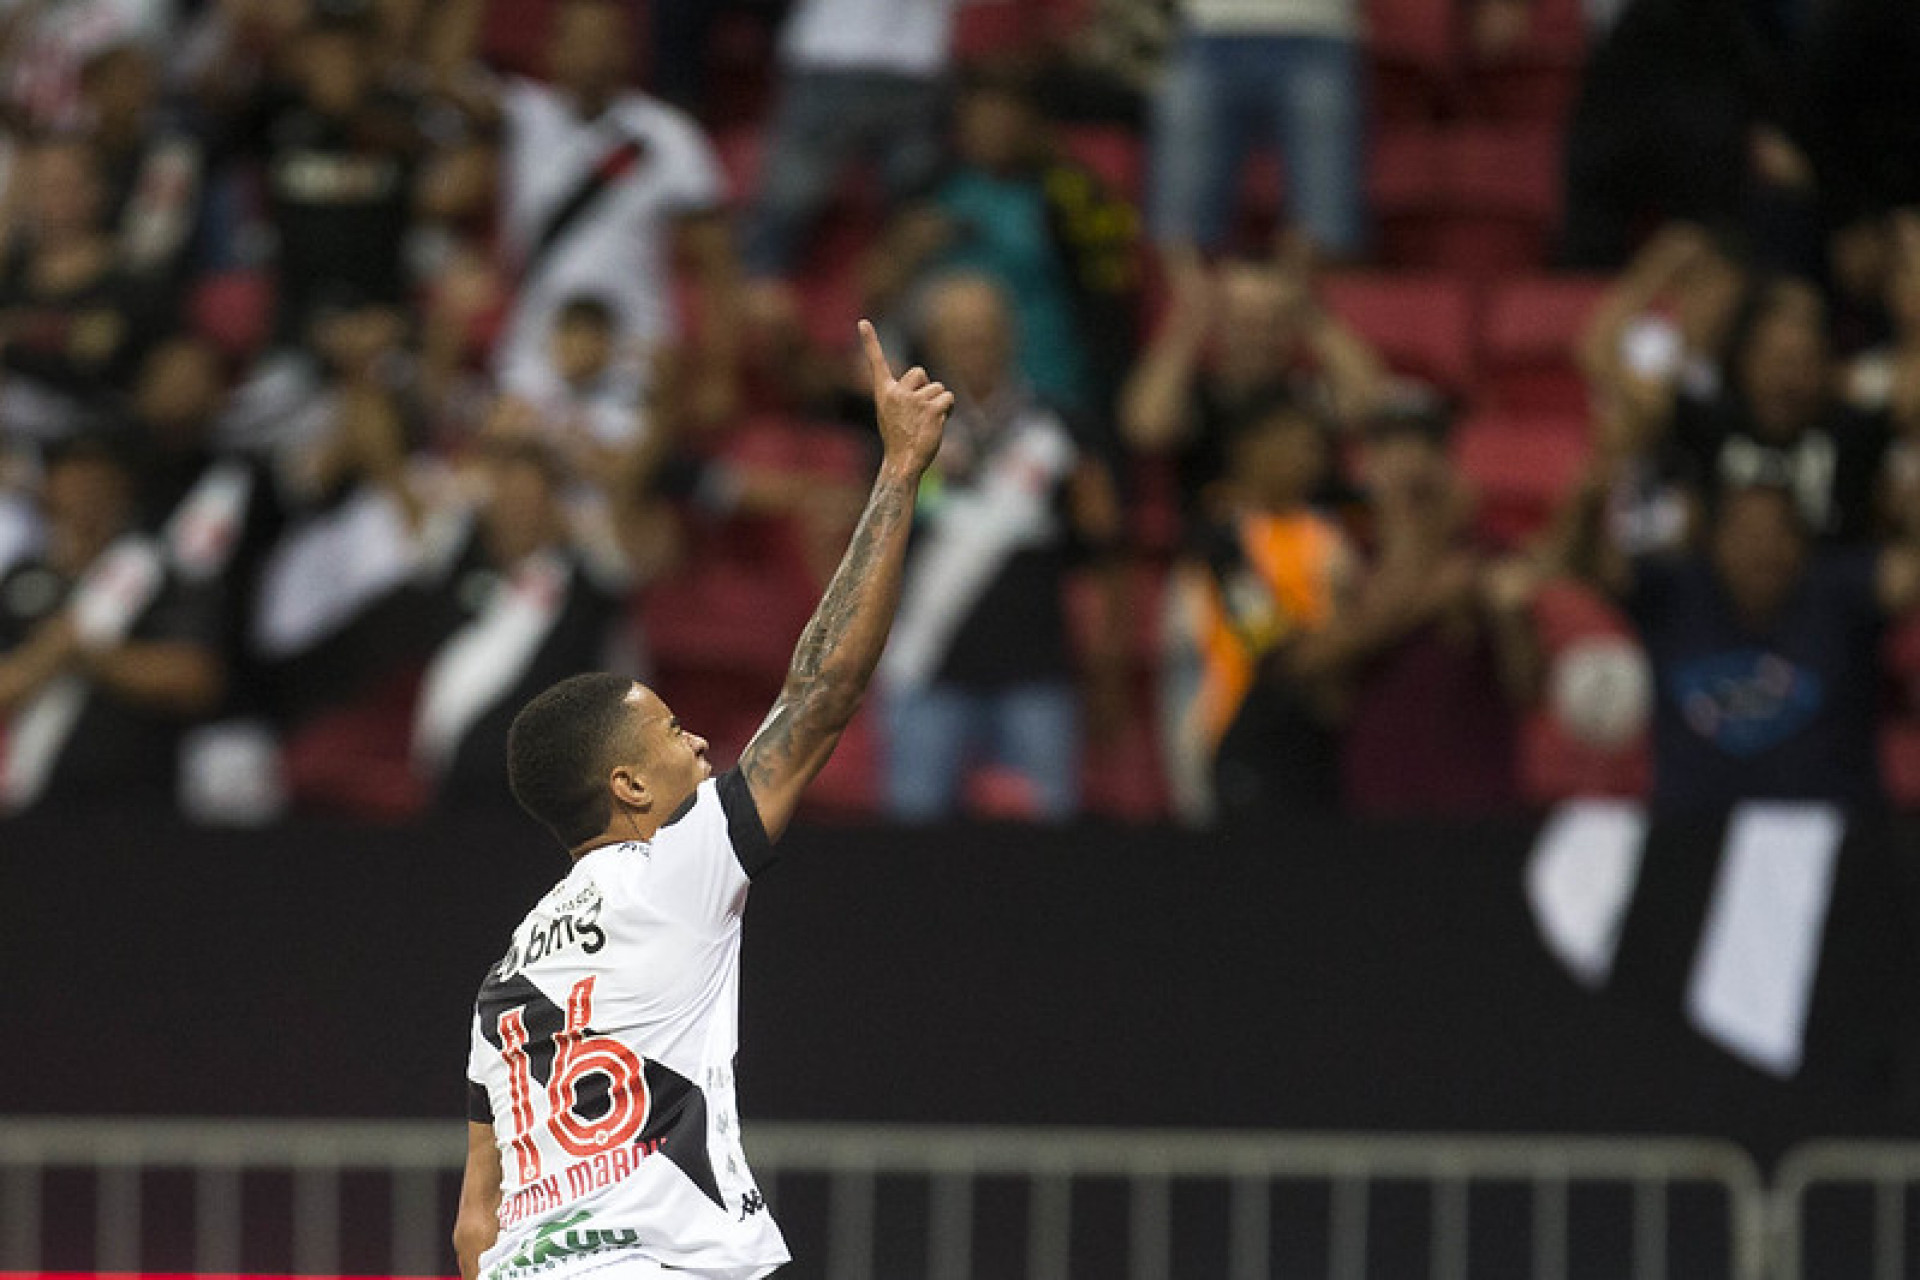 Erick Marcus comemora primeiro gol marcado com a camisa do Vasco - FOTO: Daniel RAMALHO/VASCO